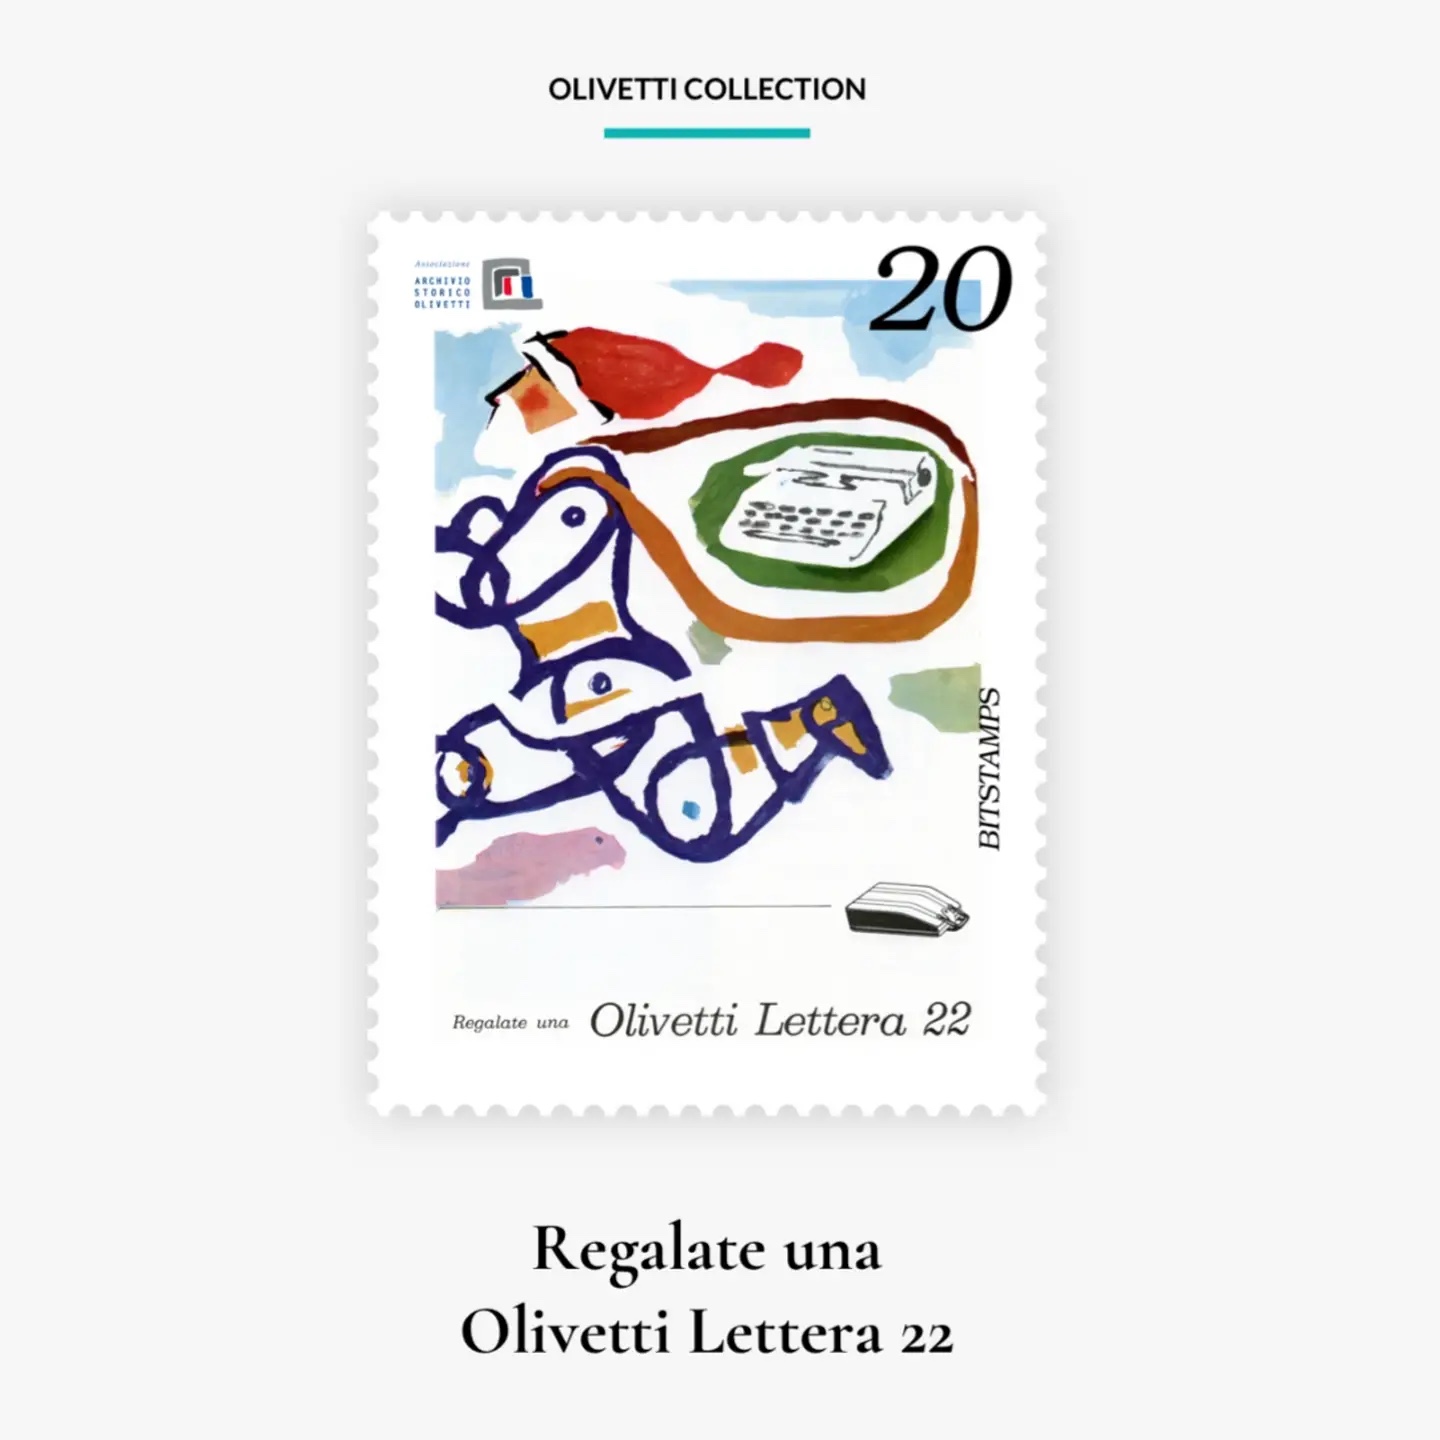 Il primo francobollo digitale della “Olivetti Collection”